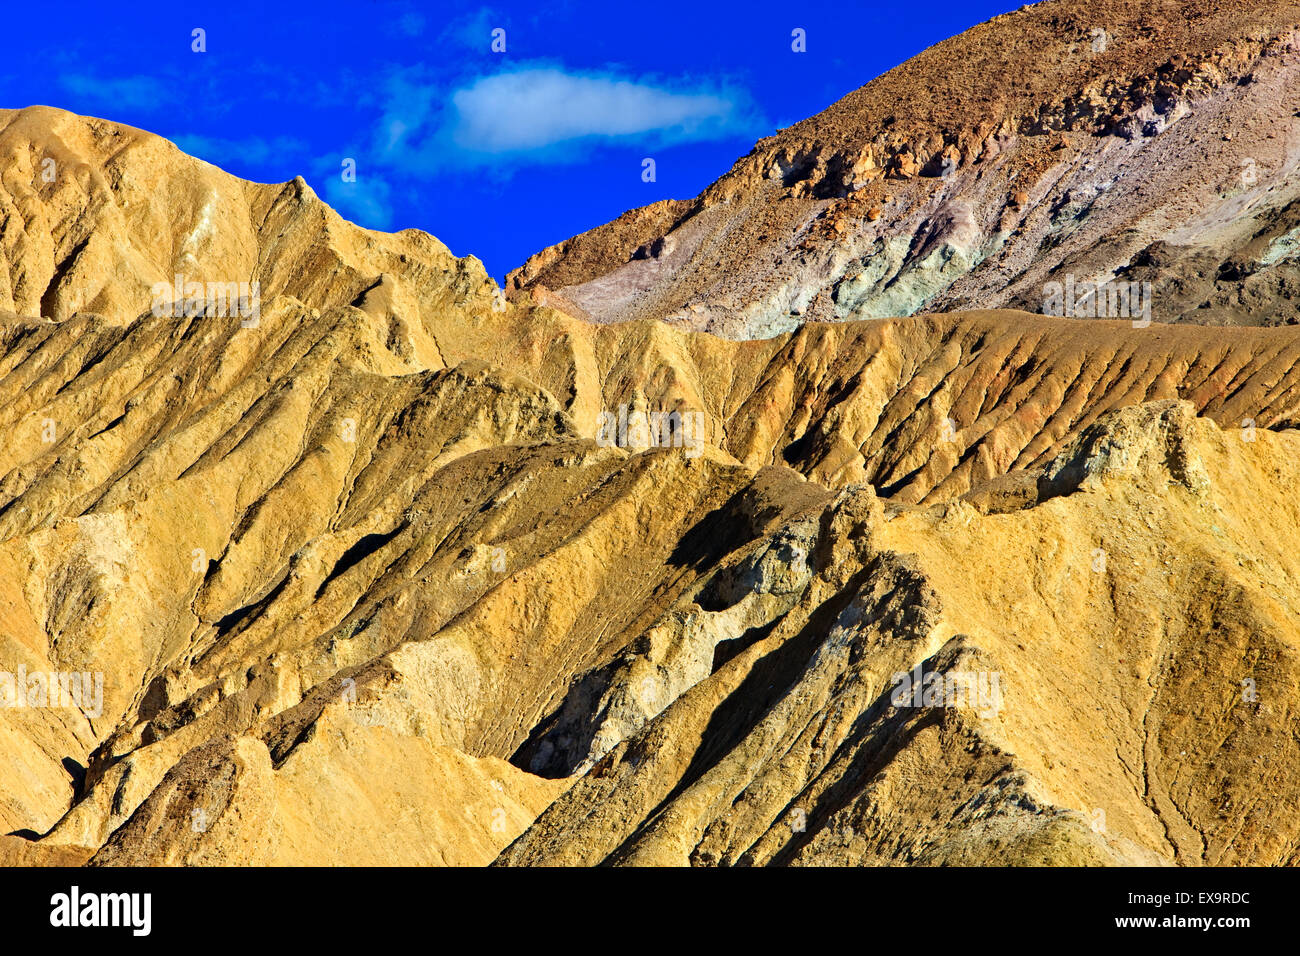 Visage de montagnes noires avec différentes couleurs de rock (minéraux différents), le long d'artistes, Death Valley National Park, Calif. Banque D'Images